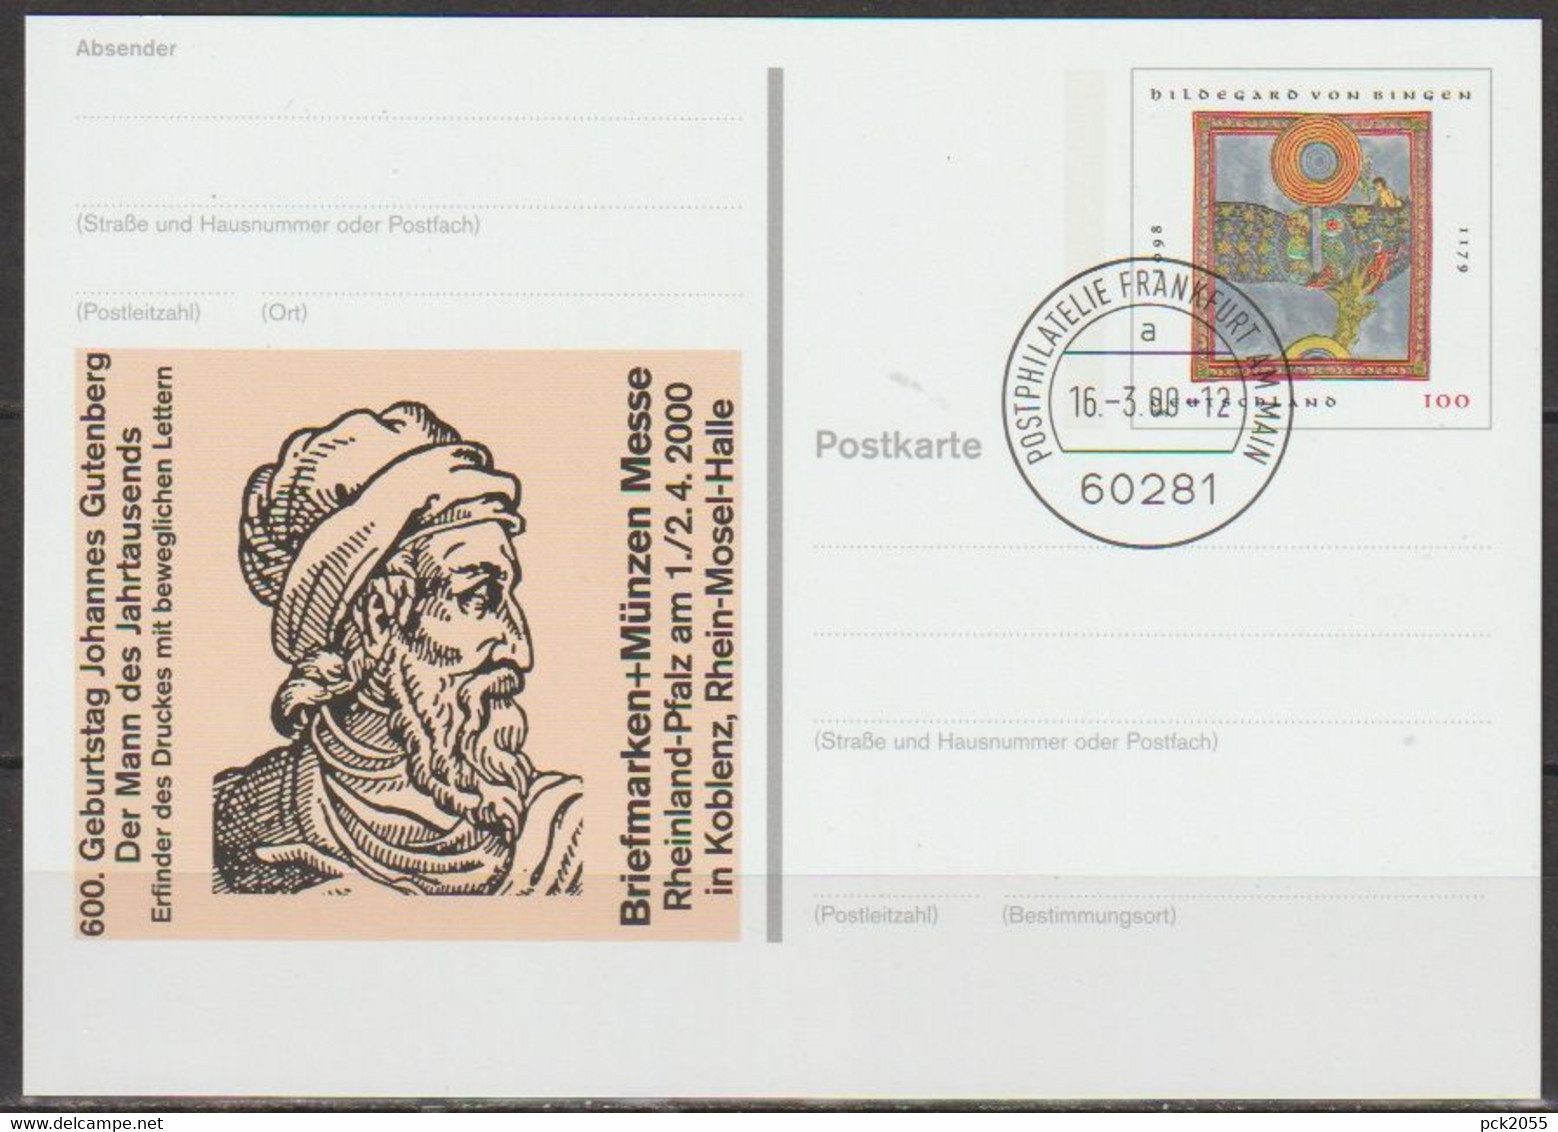 BRD Ganzsache 2000 PSo66 Münchner Briefmarkentage EST. 16.3.00 Postphilatelie Frankfurt(d3939)günstige Versandkosten - Cartes Postales - Oblitérées